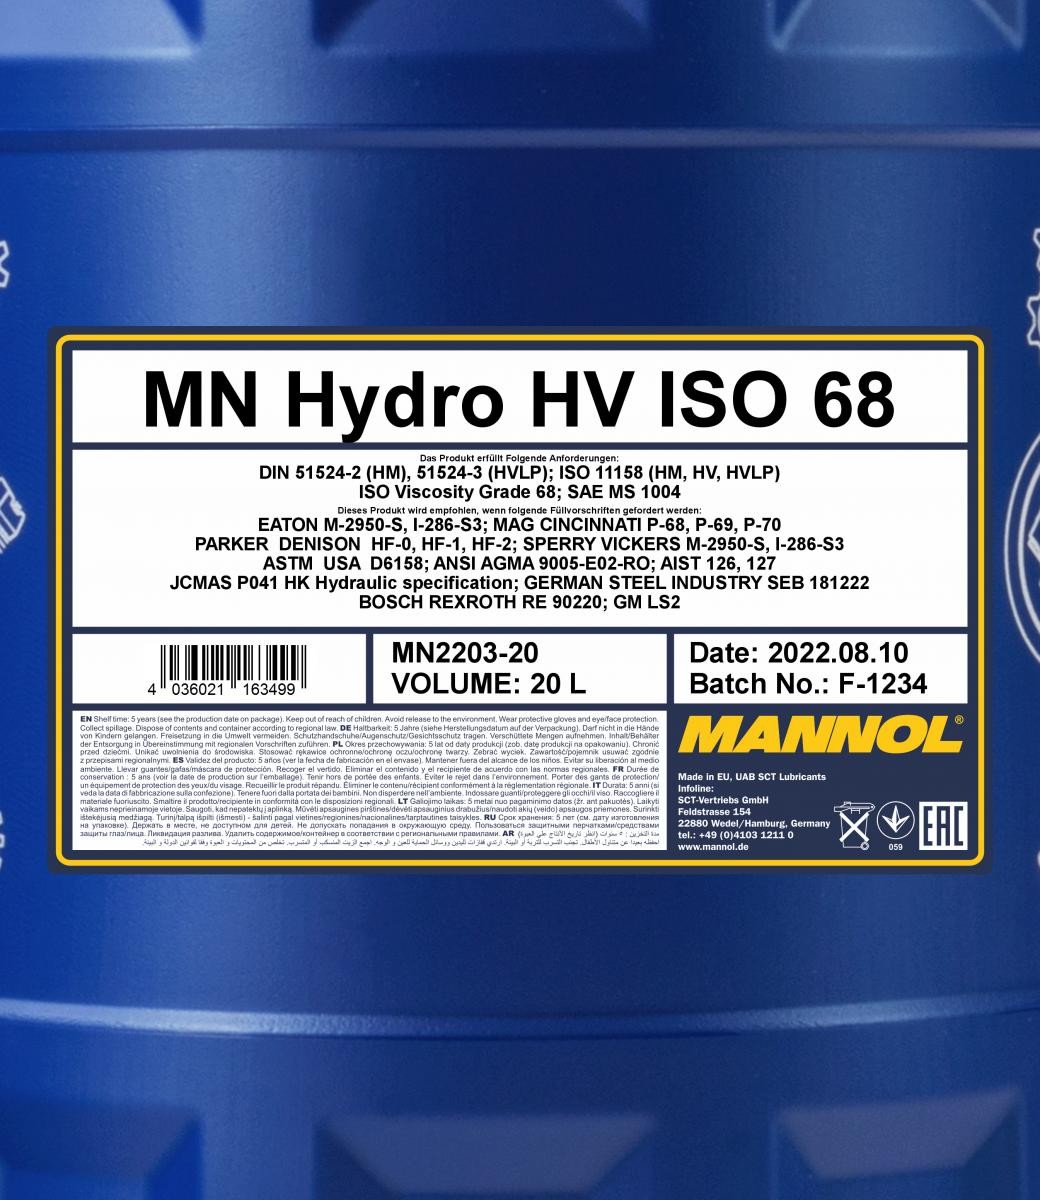 MANNOL Central Hydraulic Oil MN2203-20